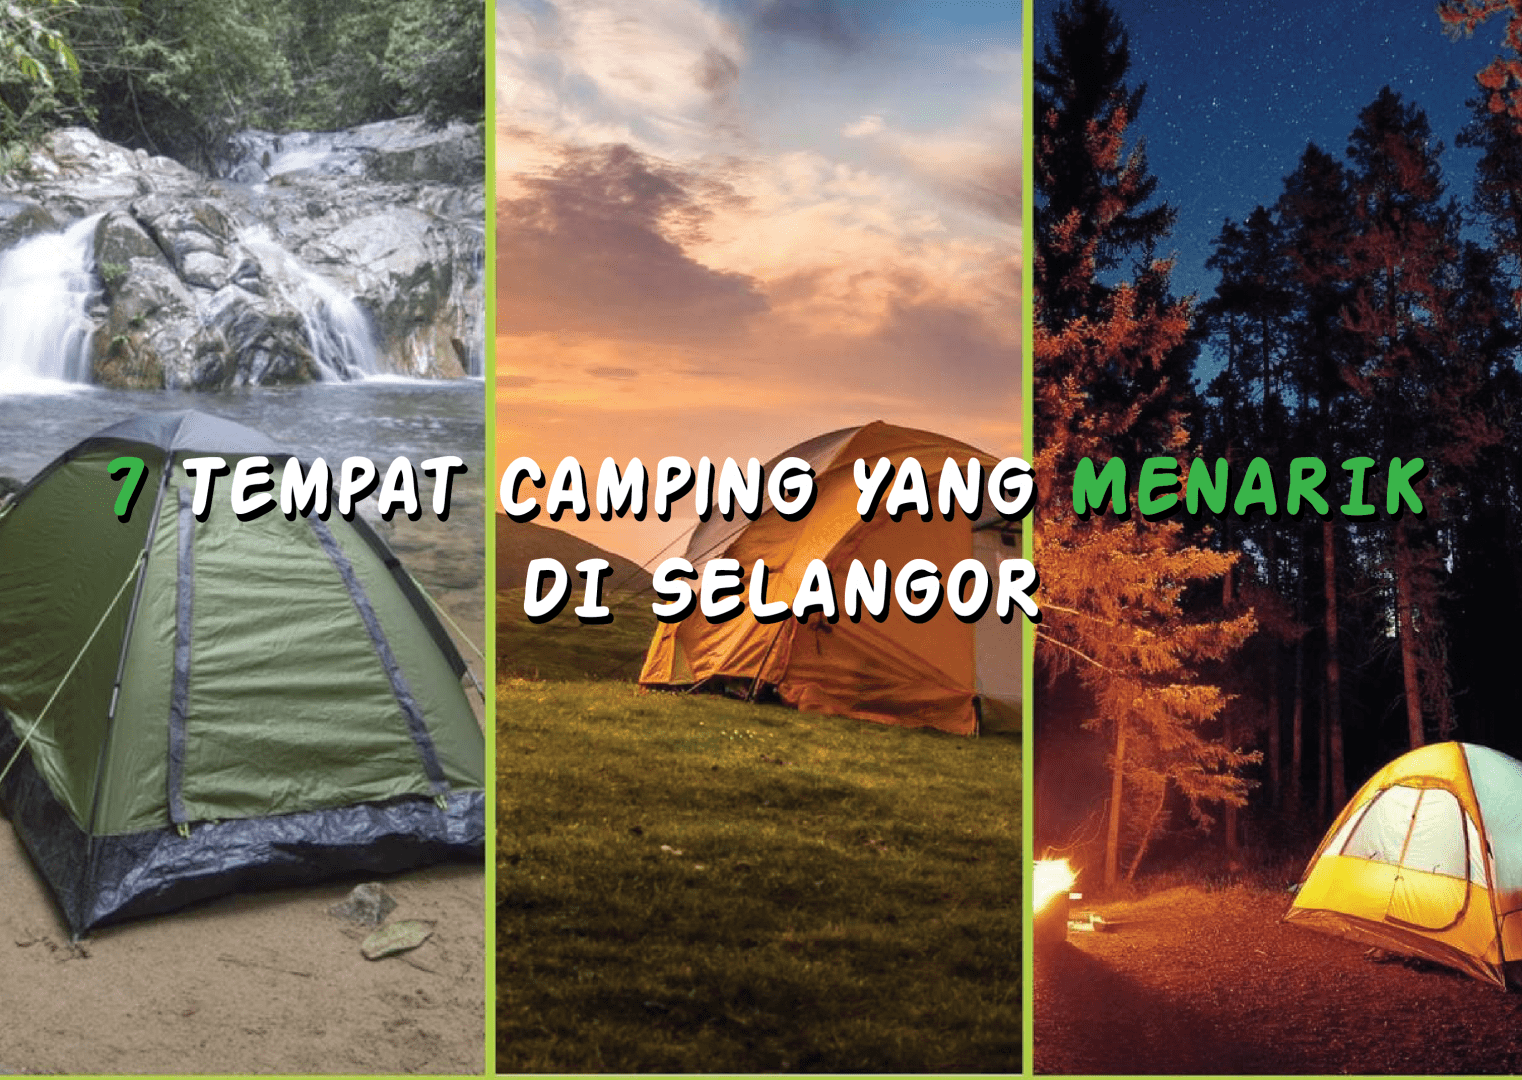 Camping selangor